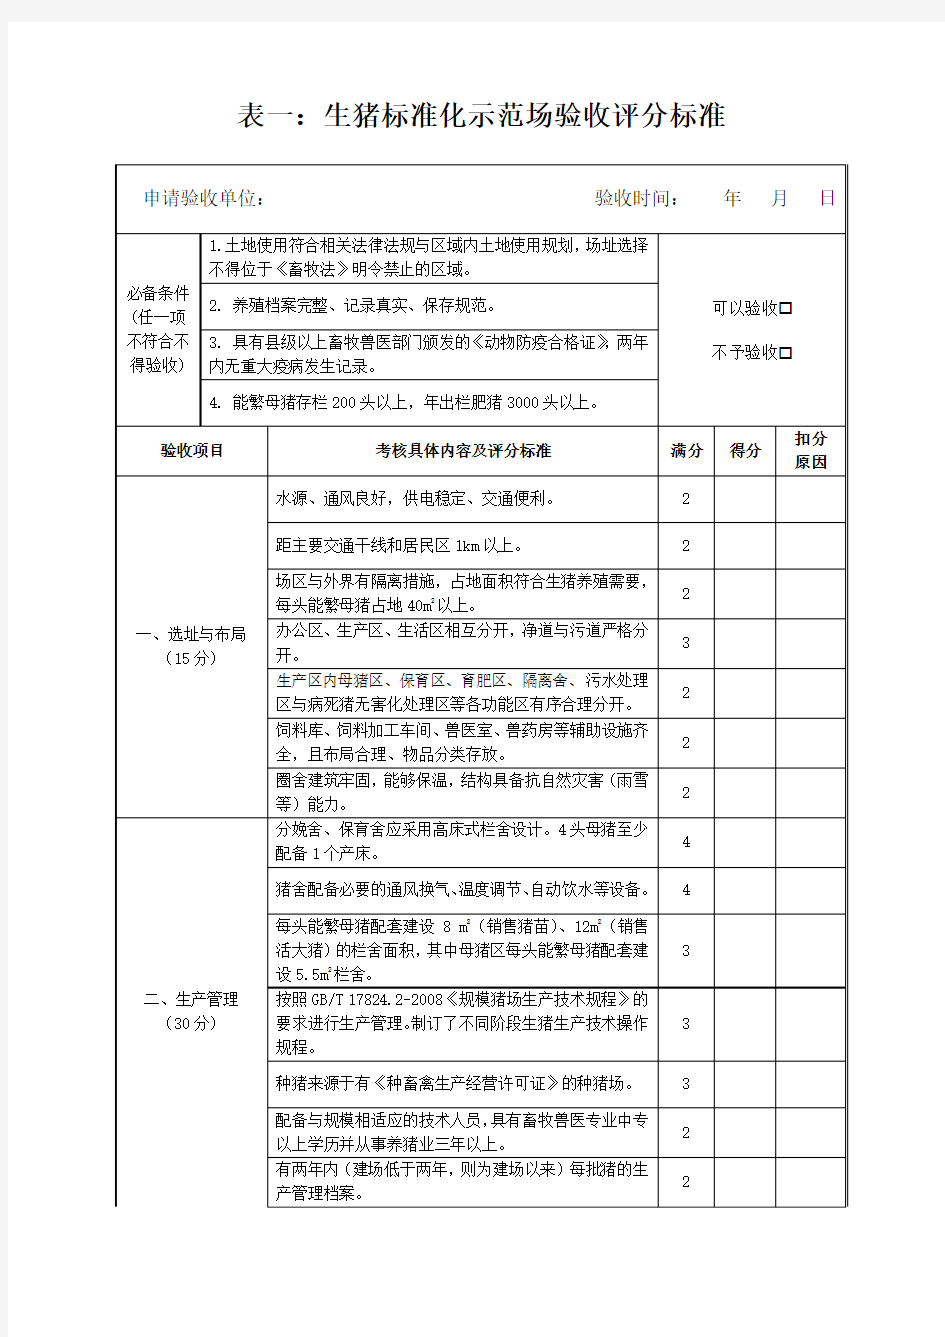 济宁市 附件1畜禽养殖标准化示范场验收评分标准